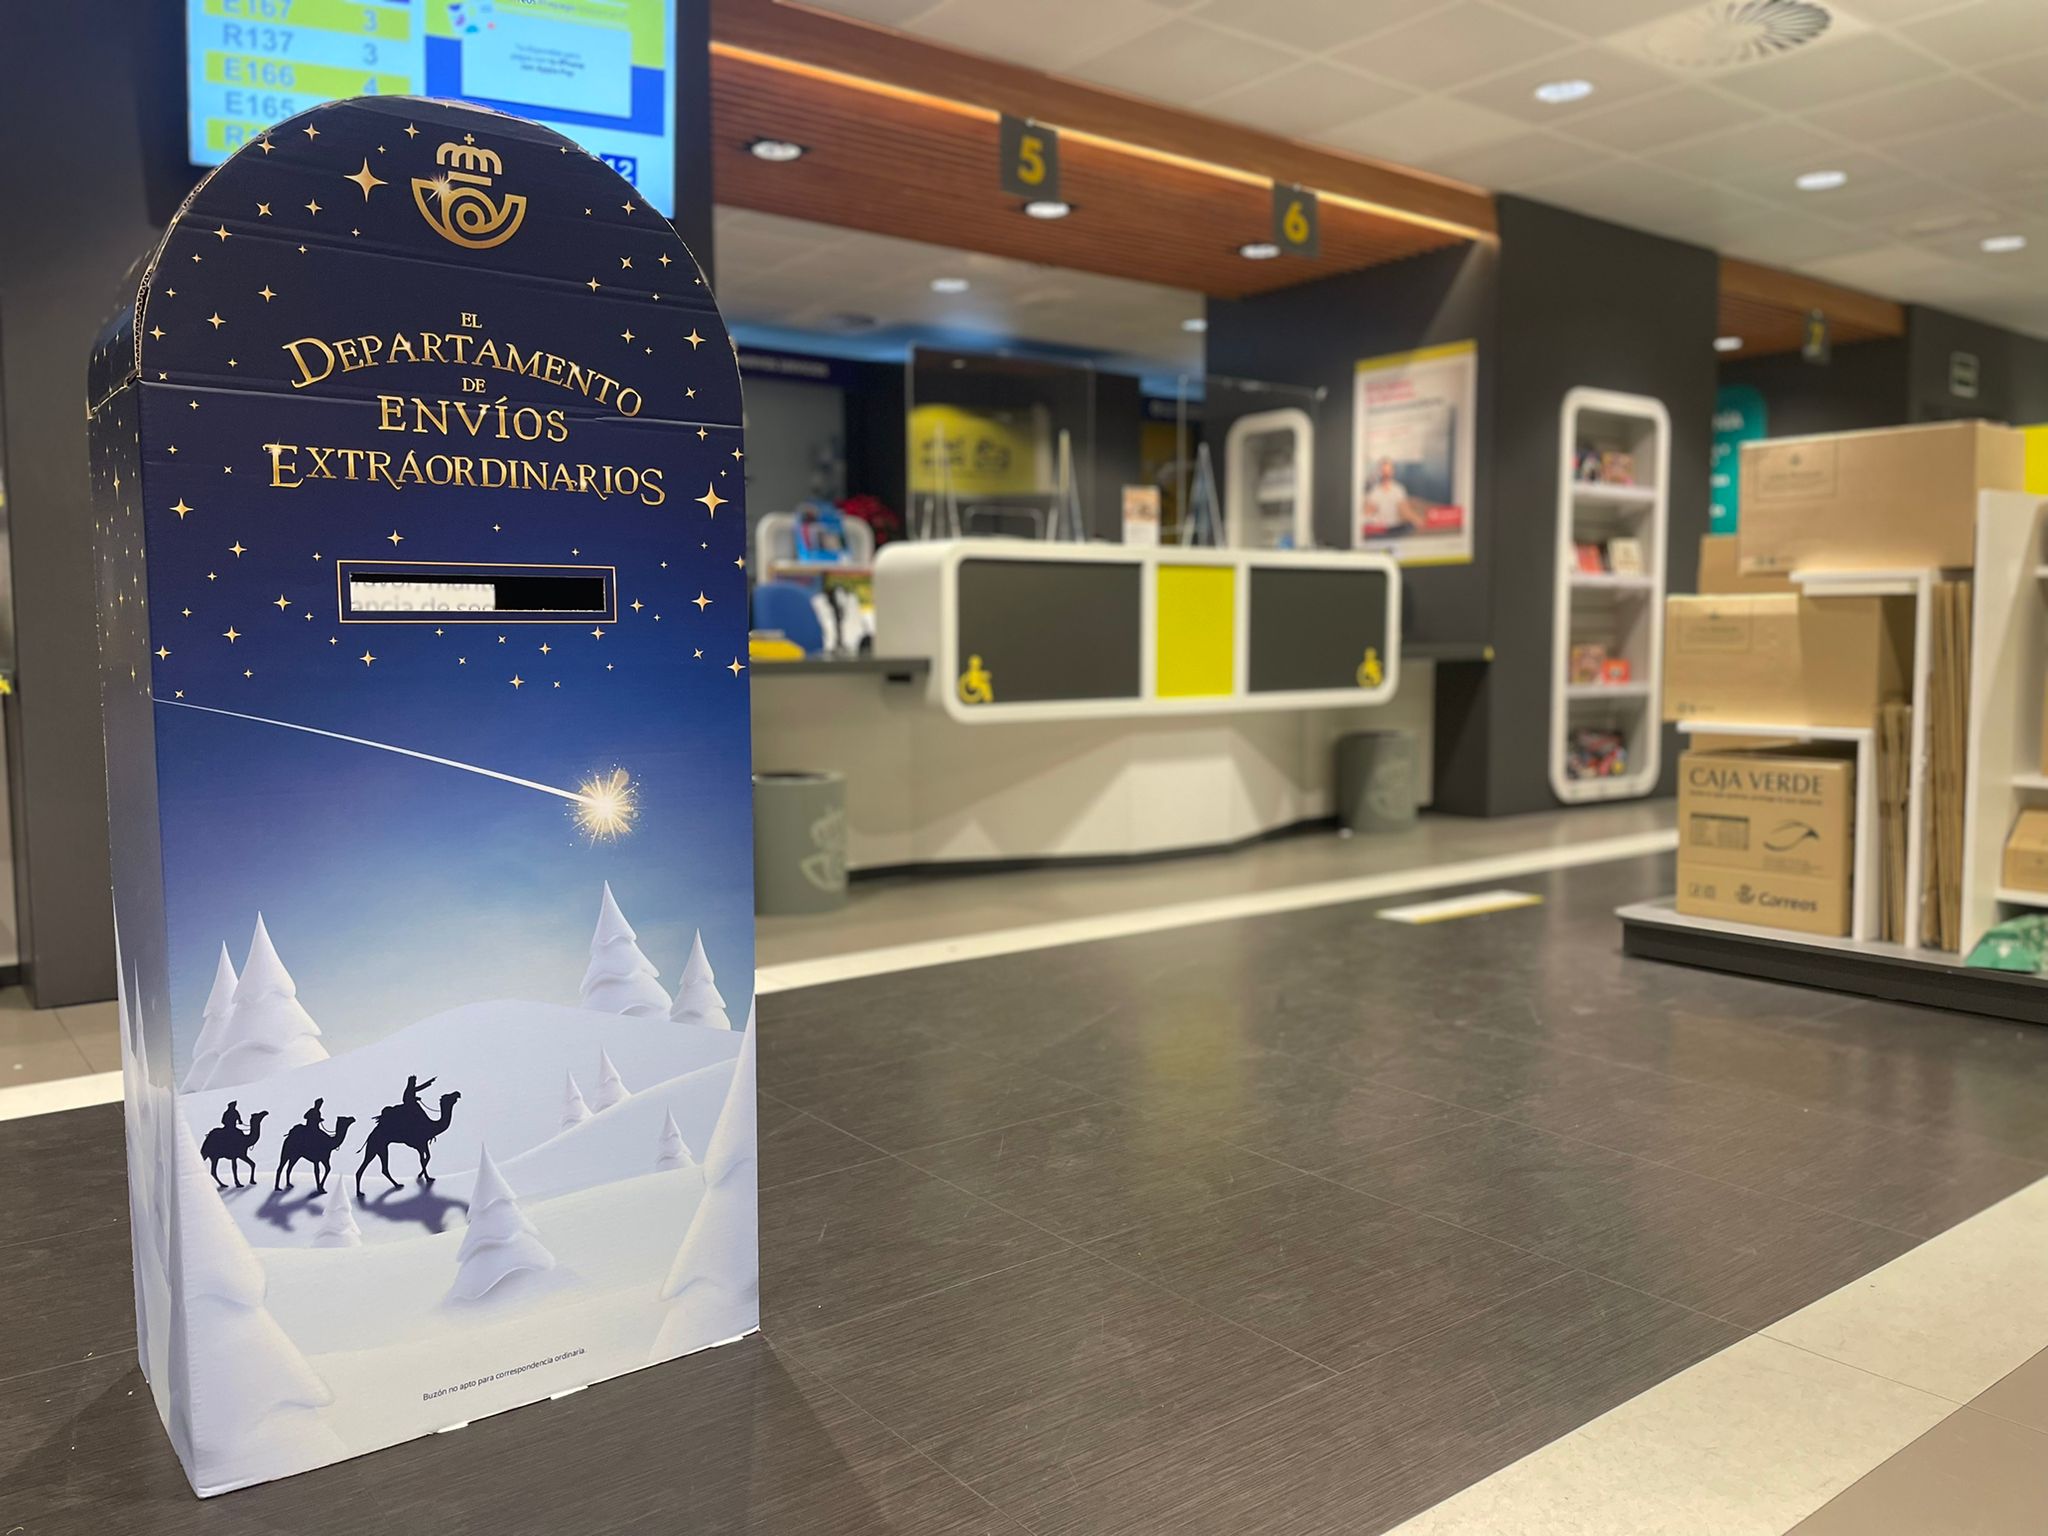 Correos instala buzones especiales en 10 oficinas de la provincia y abre su Departamento de Envíos Extraordinarios Virtual esta Navidad